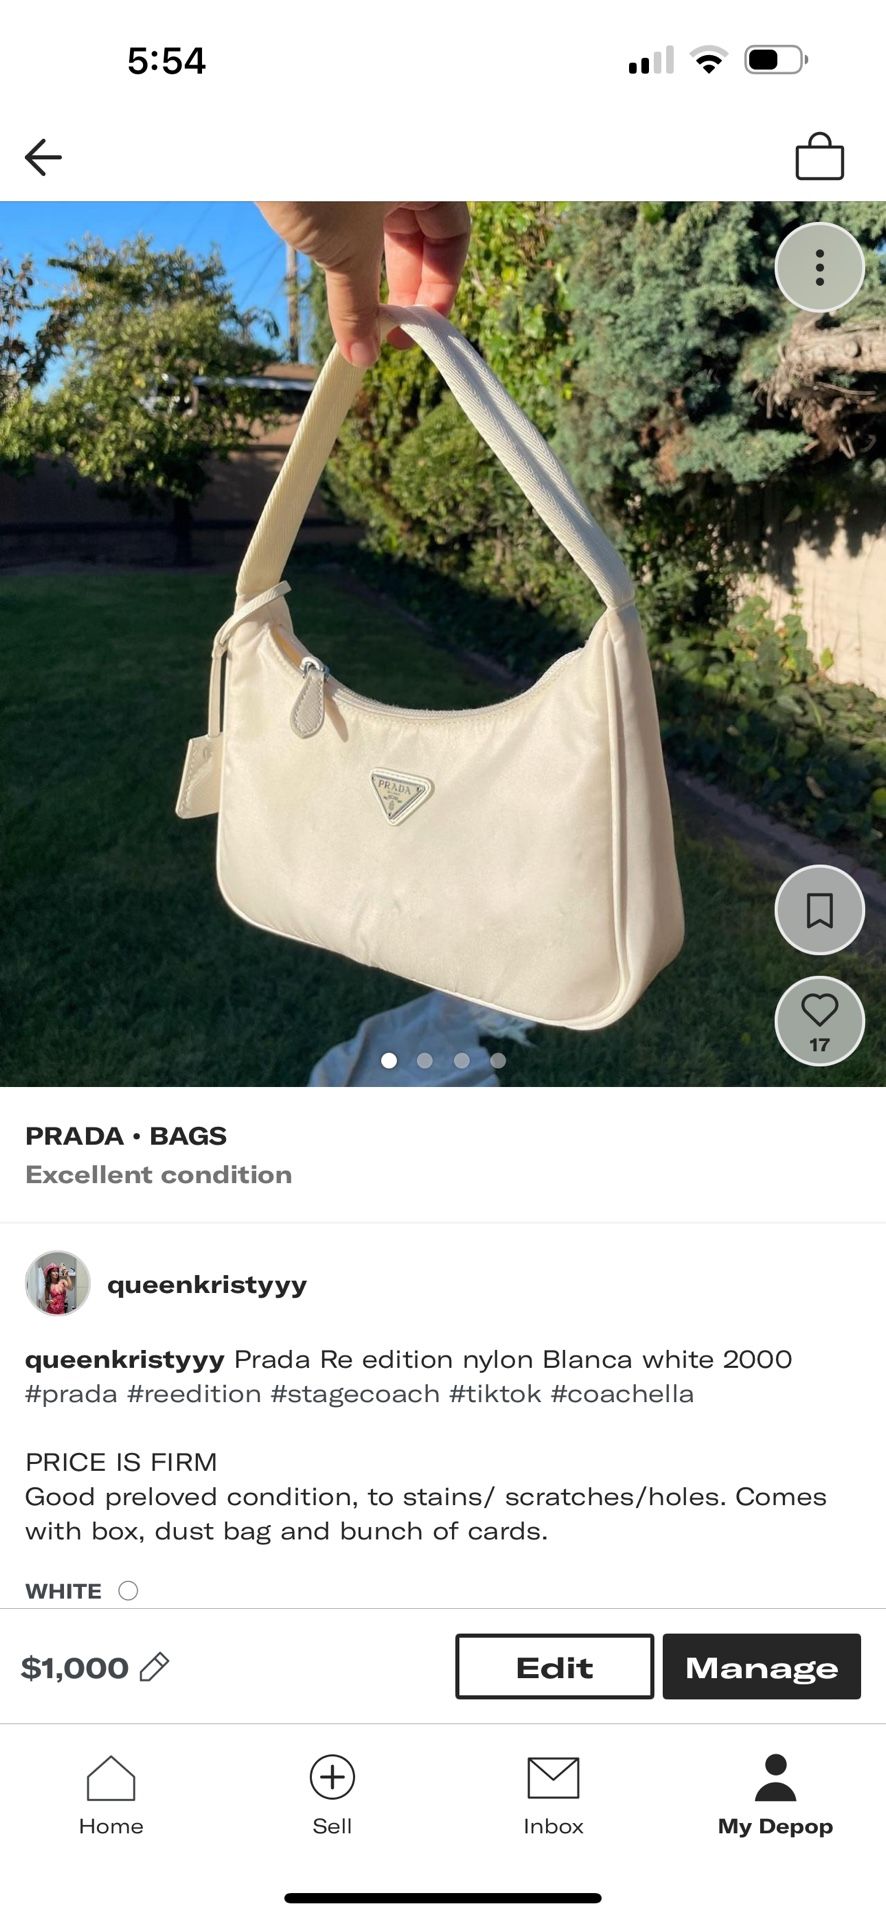 Prada Re edition nylon Blanca white 2000